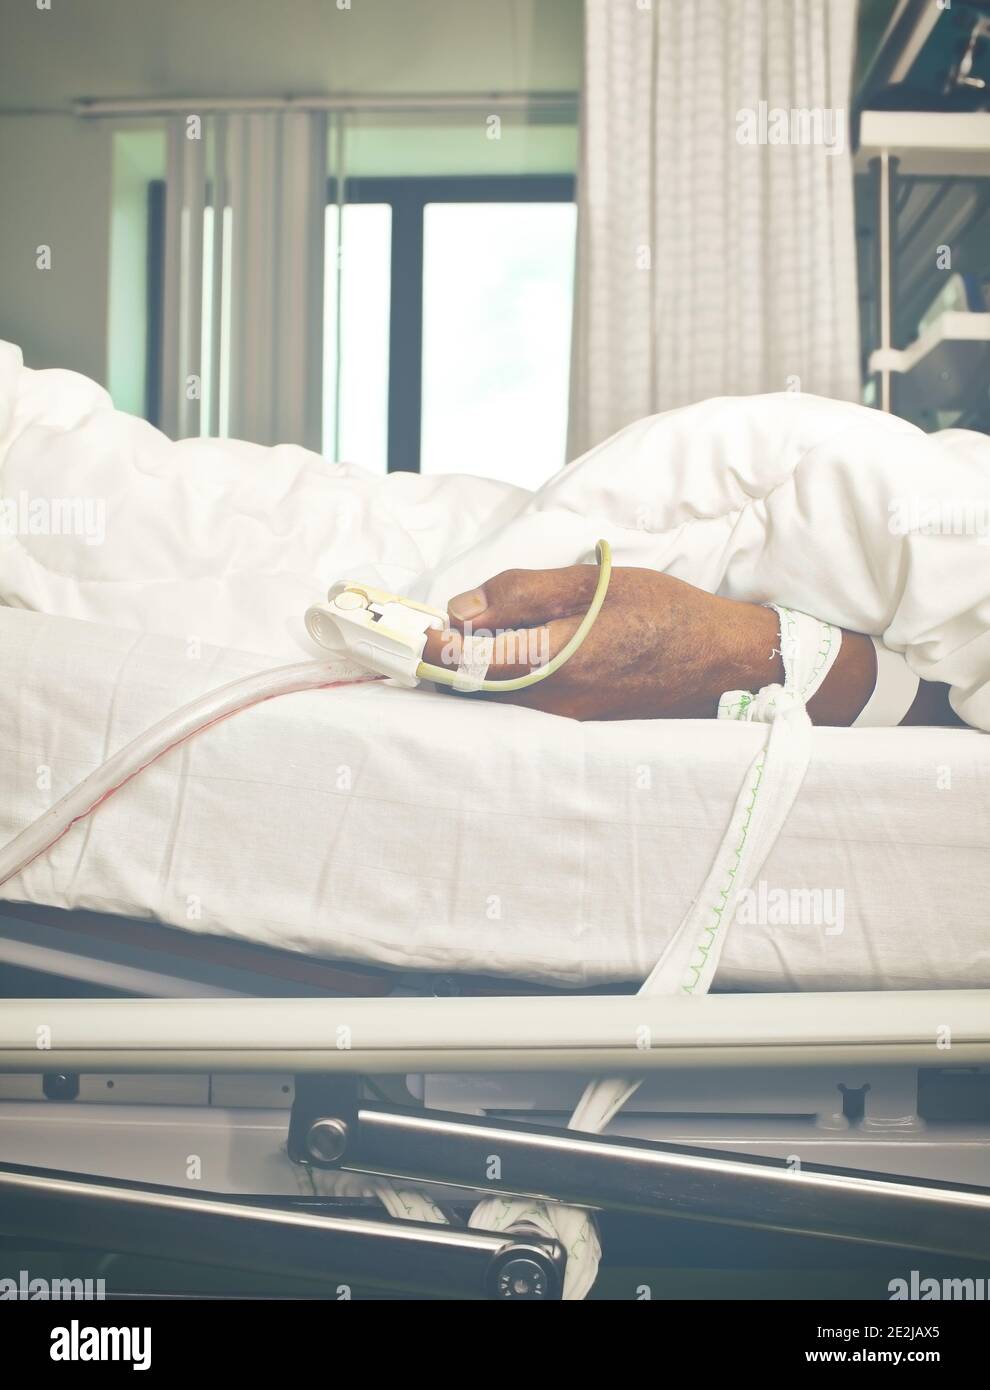 Mano del paciente atada a la cama Fotografía de stock - Alamy